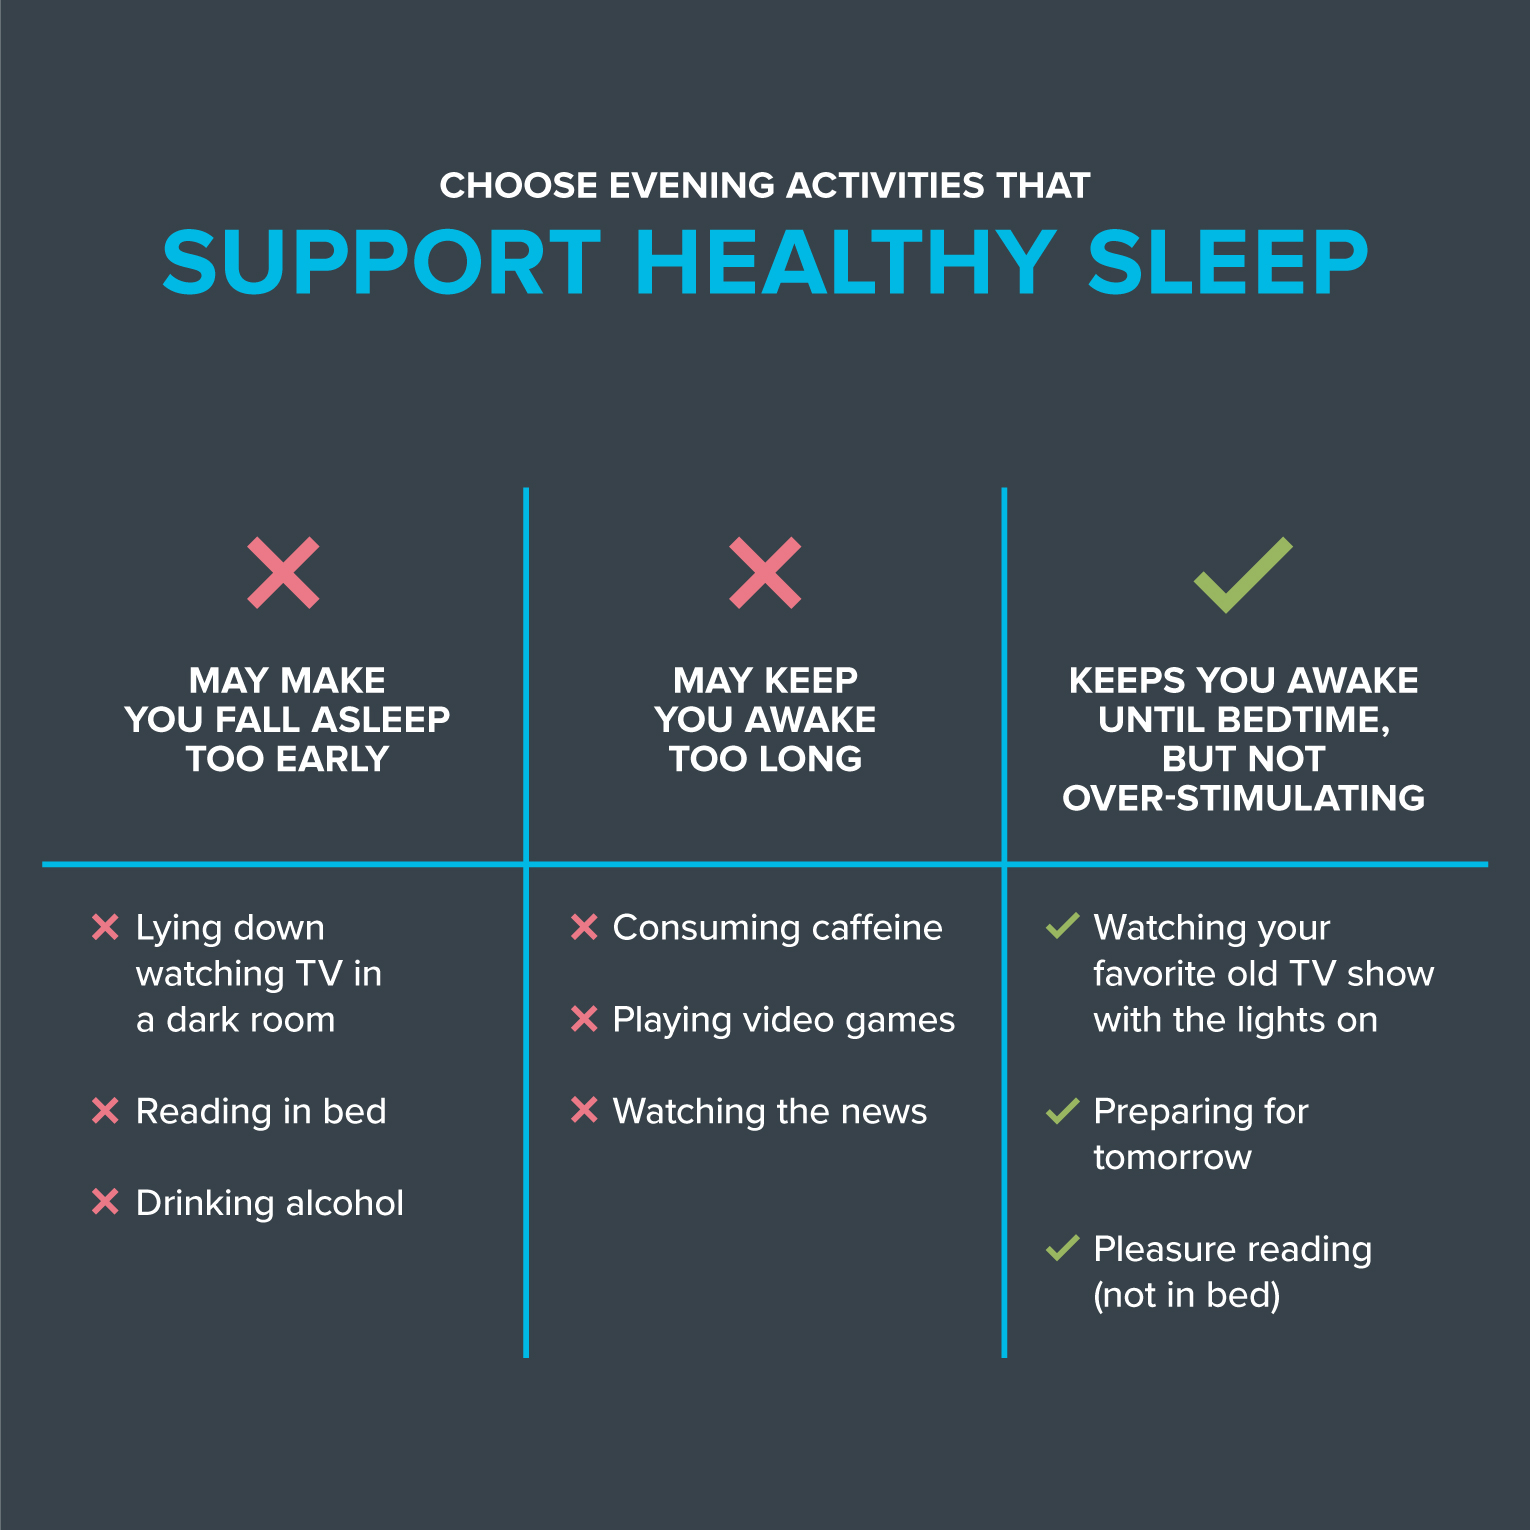 表格显示了支持健康睡眠的活动。第一栏列出了可能让你过早入睡的活动:1)躺在黑屋子里看电视，2)躺在床上看书，3)喝酒。这些都应该避免。第二栏列出了可能让你长时间清醒的活动:1)摄入咖啡因，2)玩电子游戏，3)看新闻。这些活动也应避免。第三栏列出了能让你清醒到睡觉但又不会过度刺激的活动:1)开着灯看你最喜欢的老电视节目，2)为明天做准备，3)愉悦阅读(不在床上)。这些活动有助于健康的睡眠。